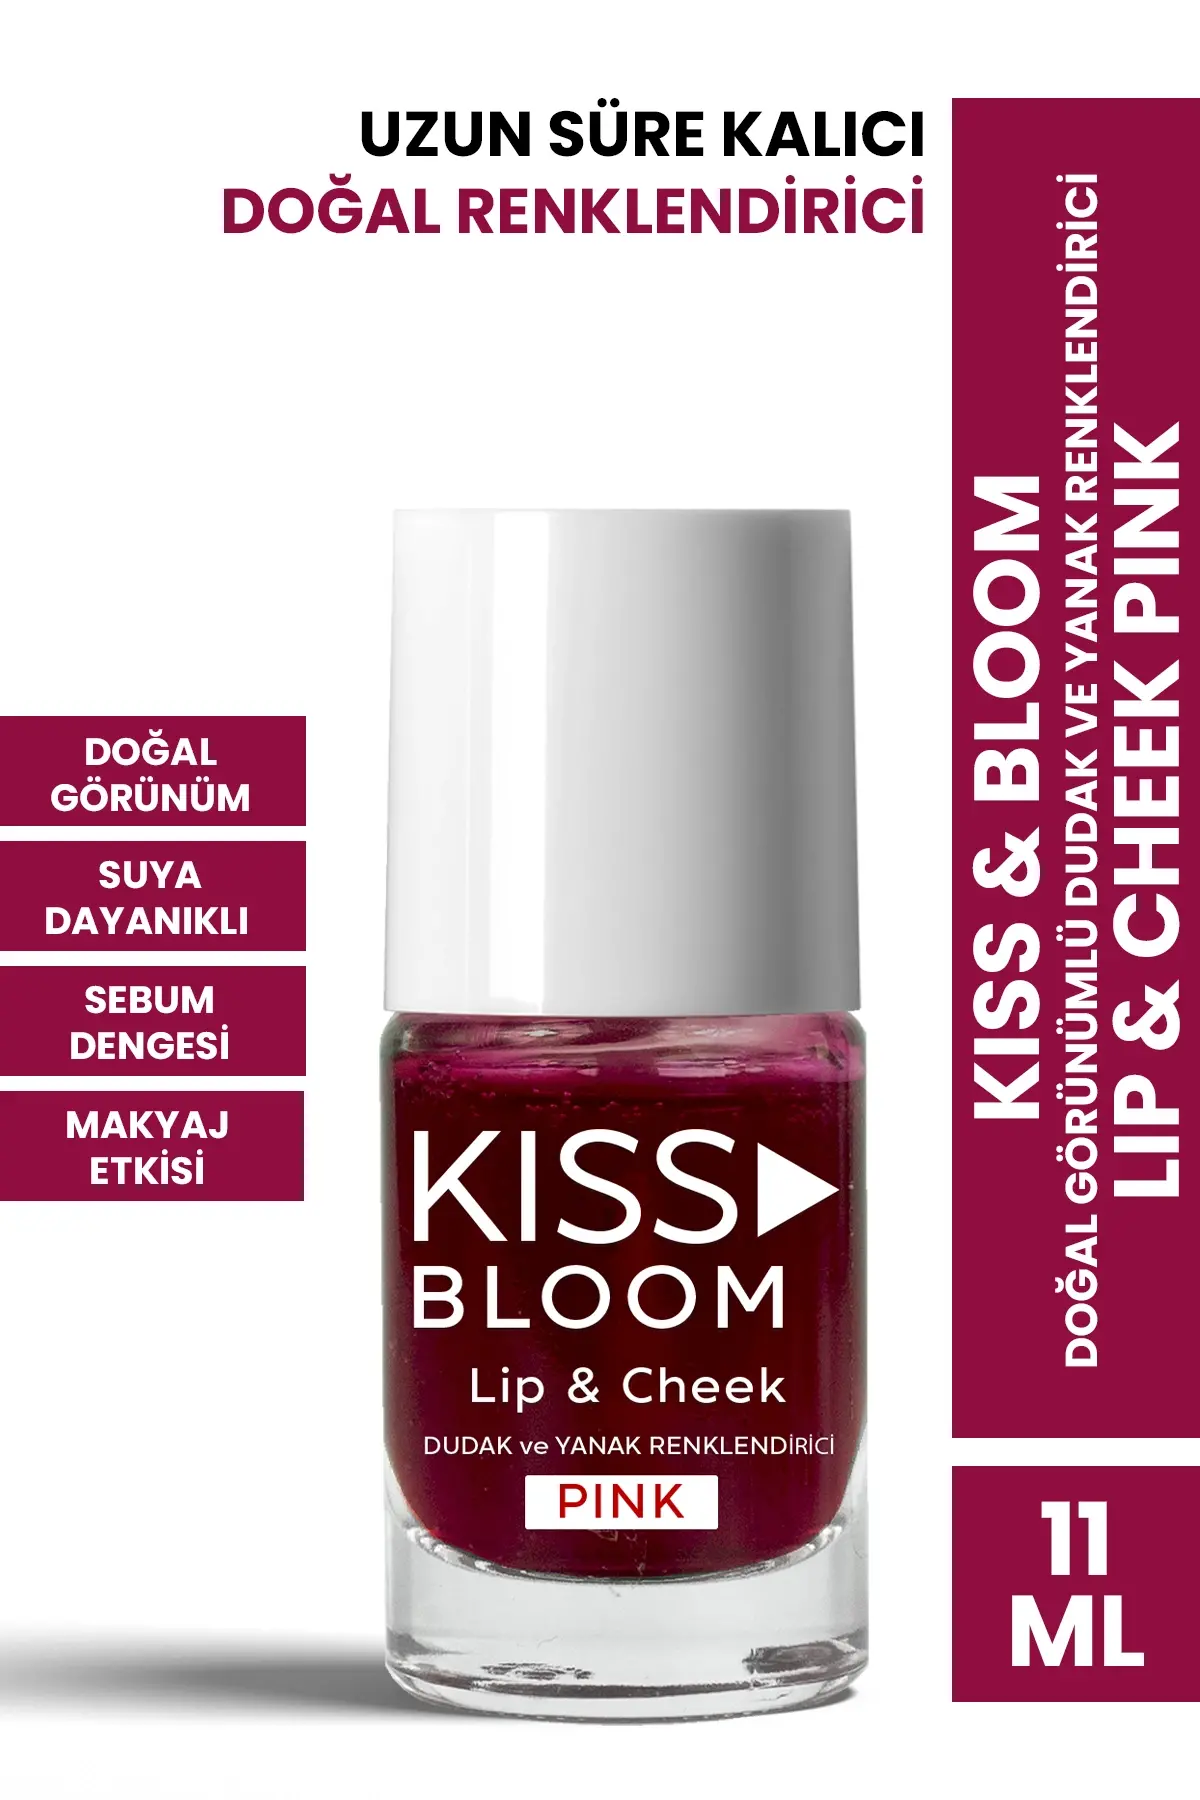 PROCSIN Kiss & Bloom Doğal Görünümlü Dudak ve Yanak Renklendirici Lip & Cheek Pink 11 ml - 1